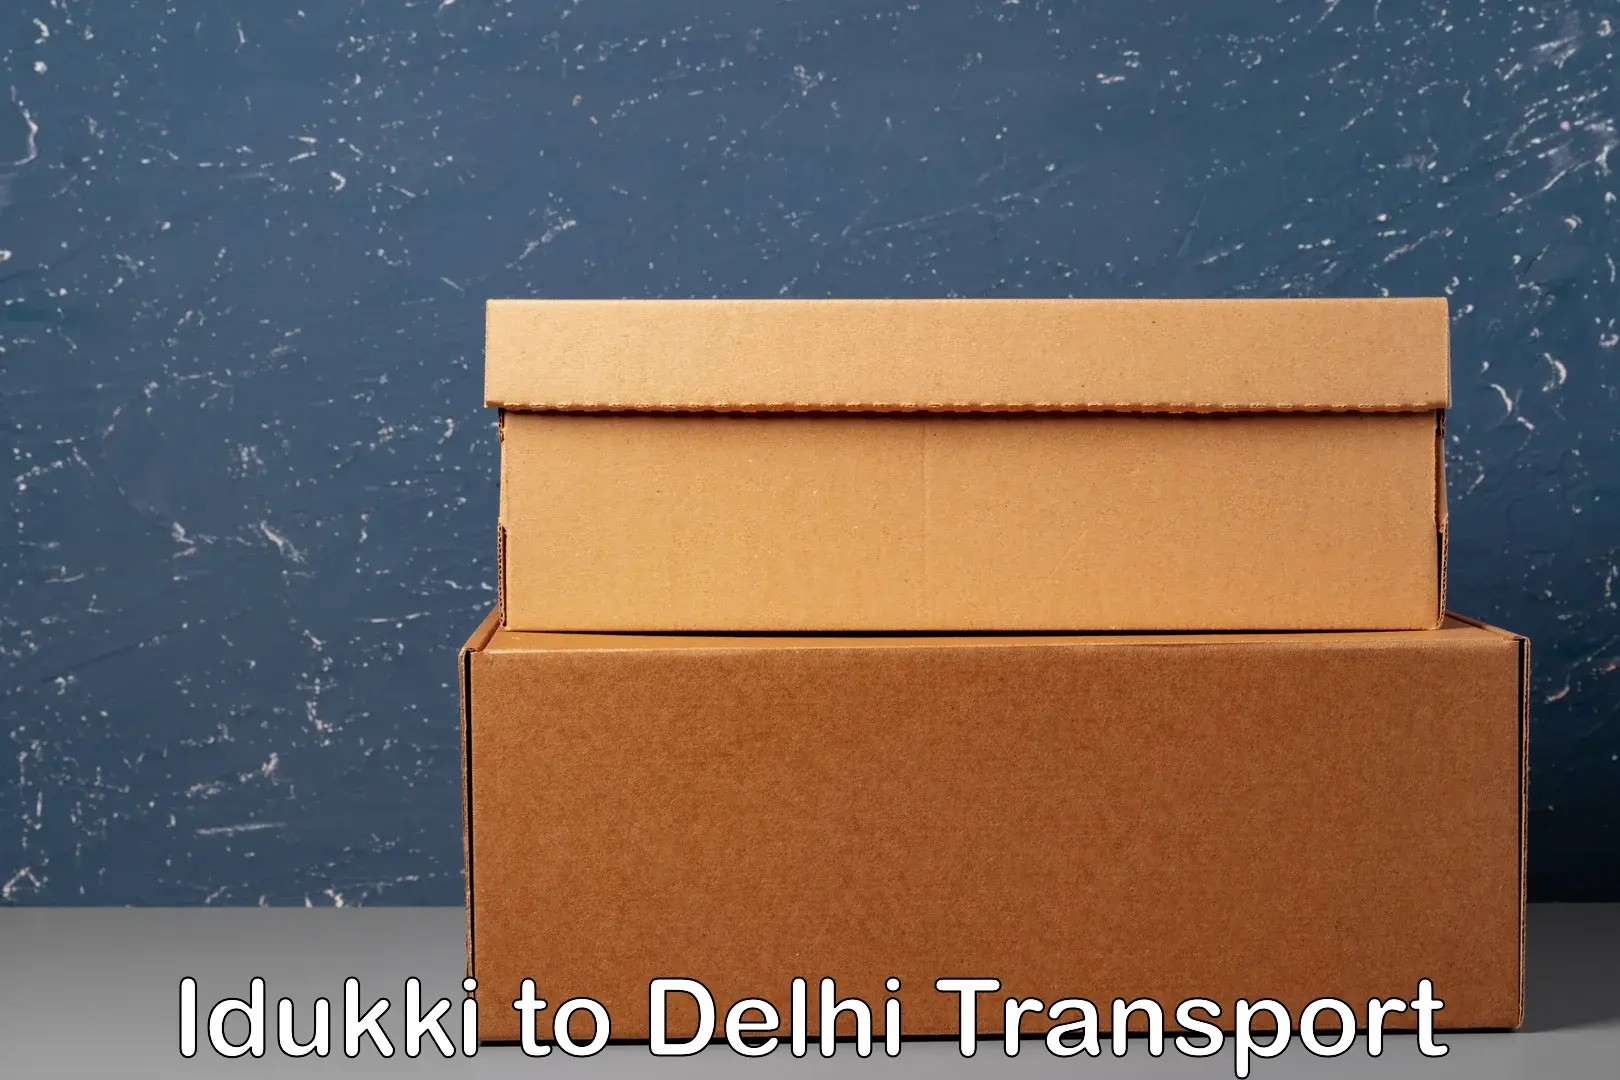 Online transport service Idukki to Delhi